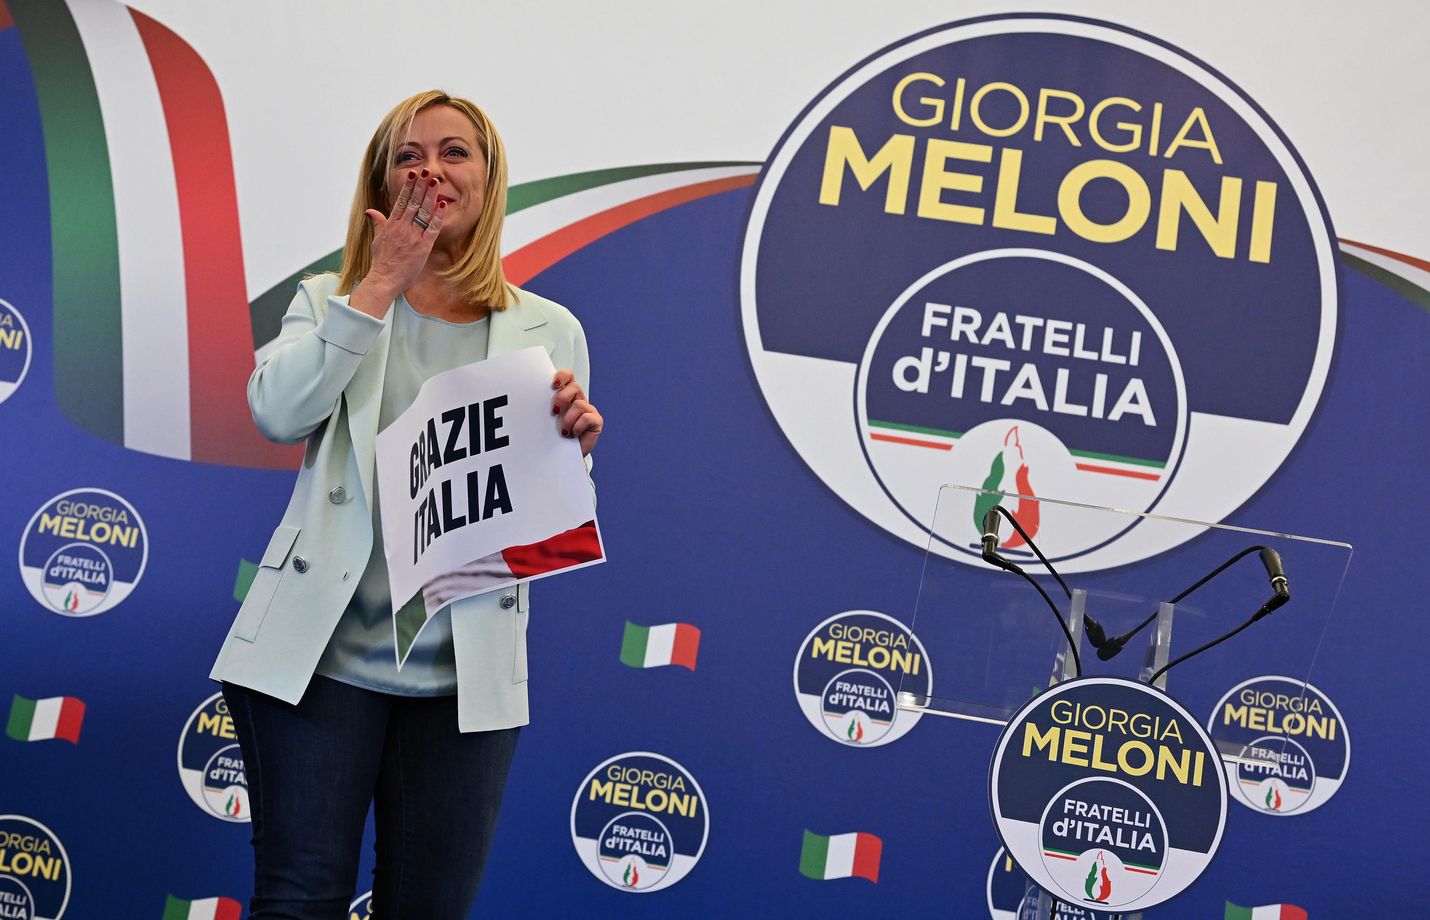 Giorgia Melonista tulee Italian ensimmäinen naispääministeri. Hän saa johdettavakseen taloudellisesti moniongelmaisen valtion, jota leimaavat kärjekkäät poliittiset erimielisyydet. 